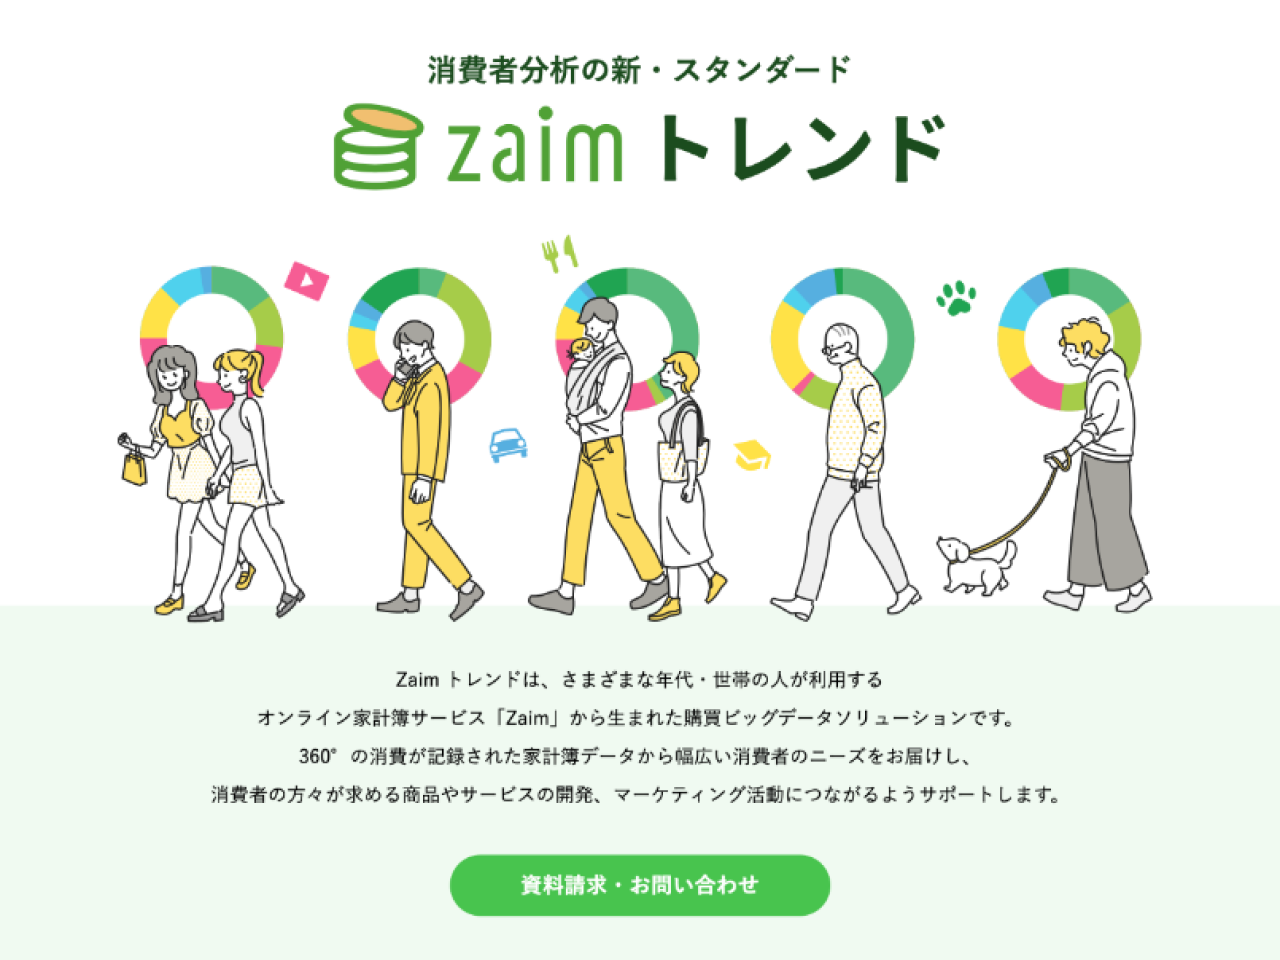 企業向けマーケティングツール「Zaim トレンド」を提供。家計簿の購買ビックデータを元にヒト・モノ・場所の変化を分析できます。